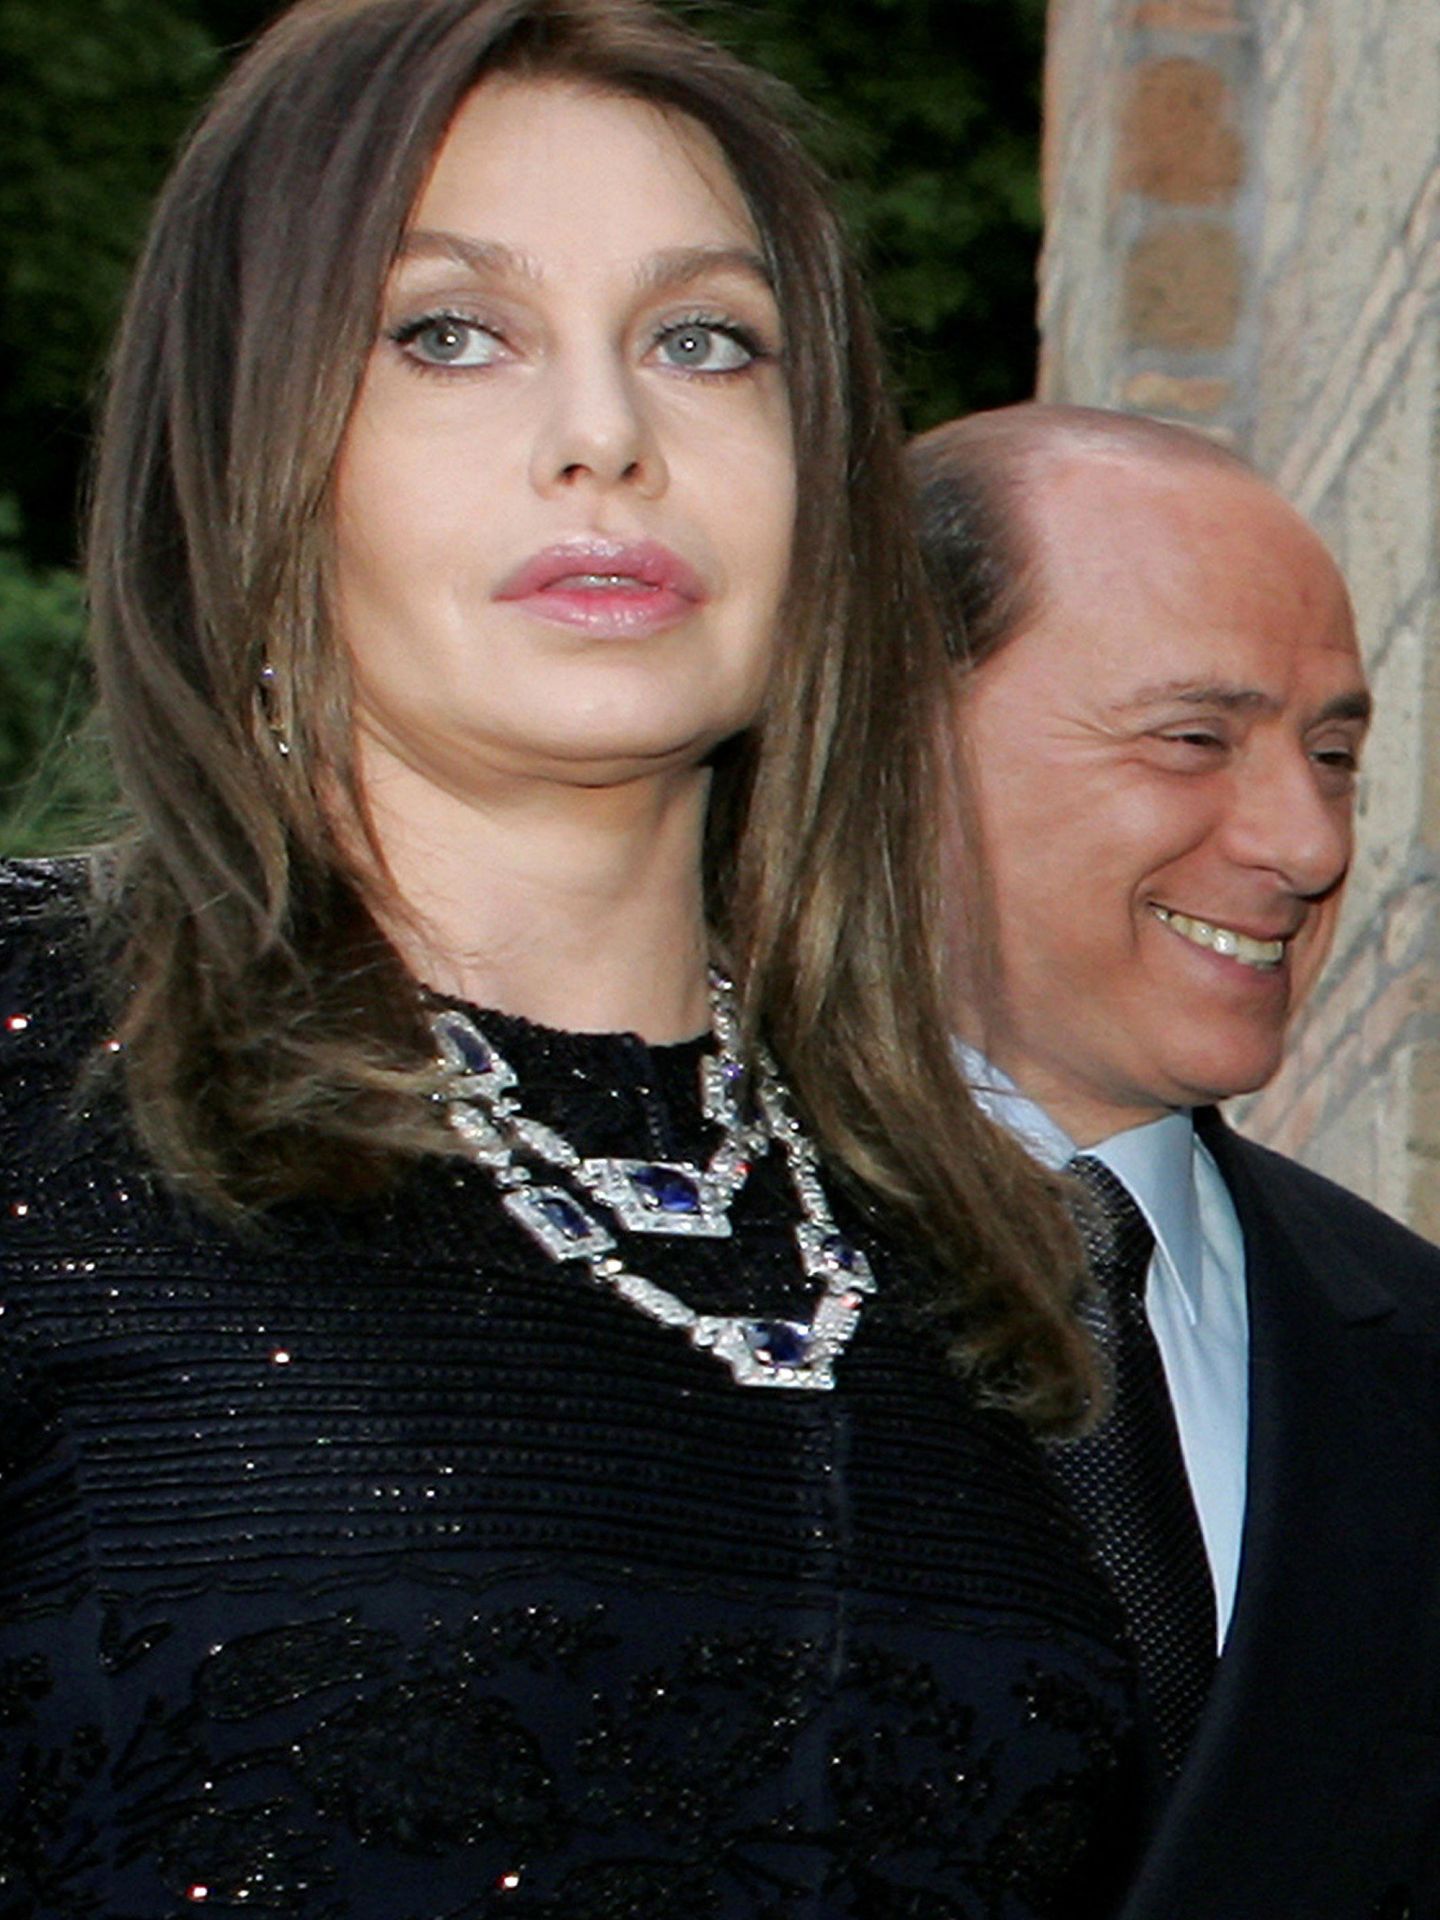 Veronica Lario y Berlusconi empezaron su relación cuando él estaba casado y ella se quedó embarazada. (Reuters/Alessandro Bianchi)